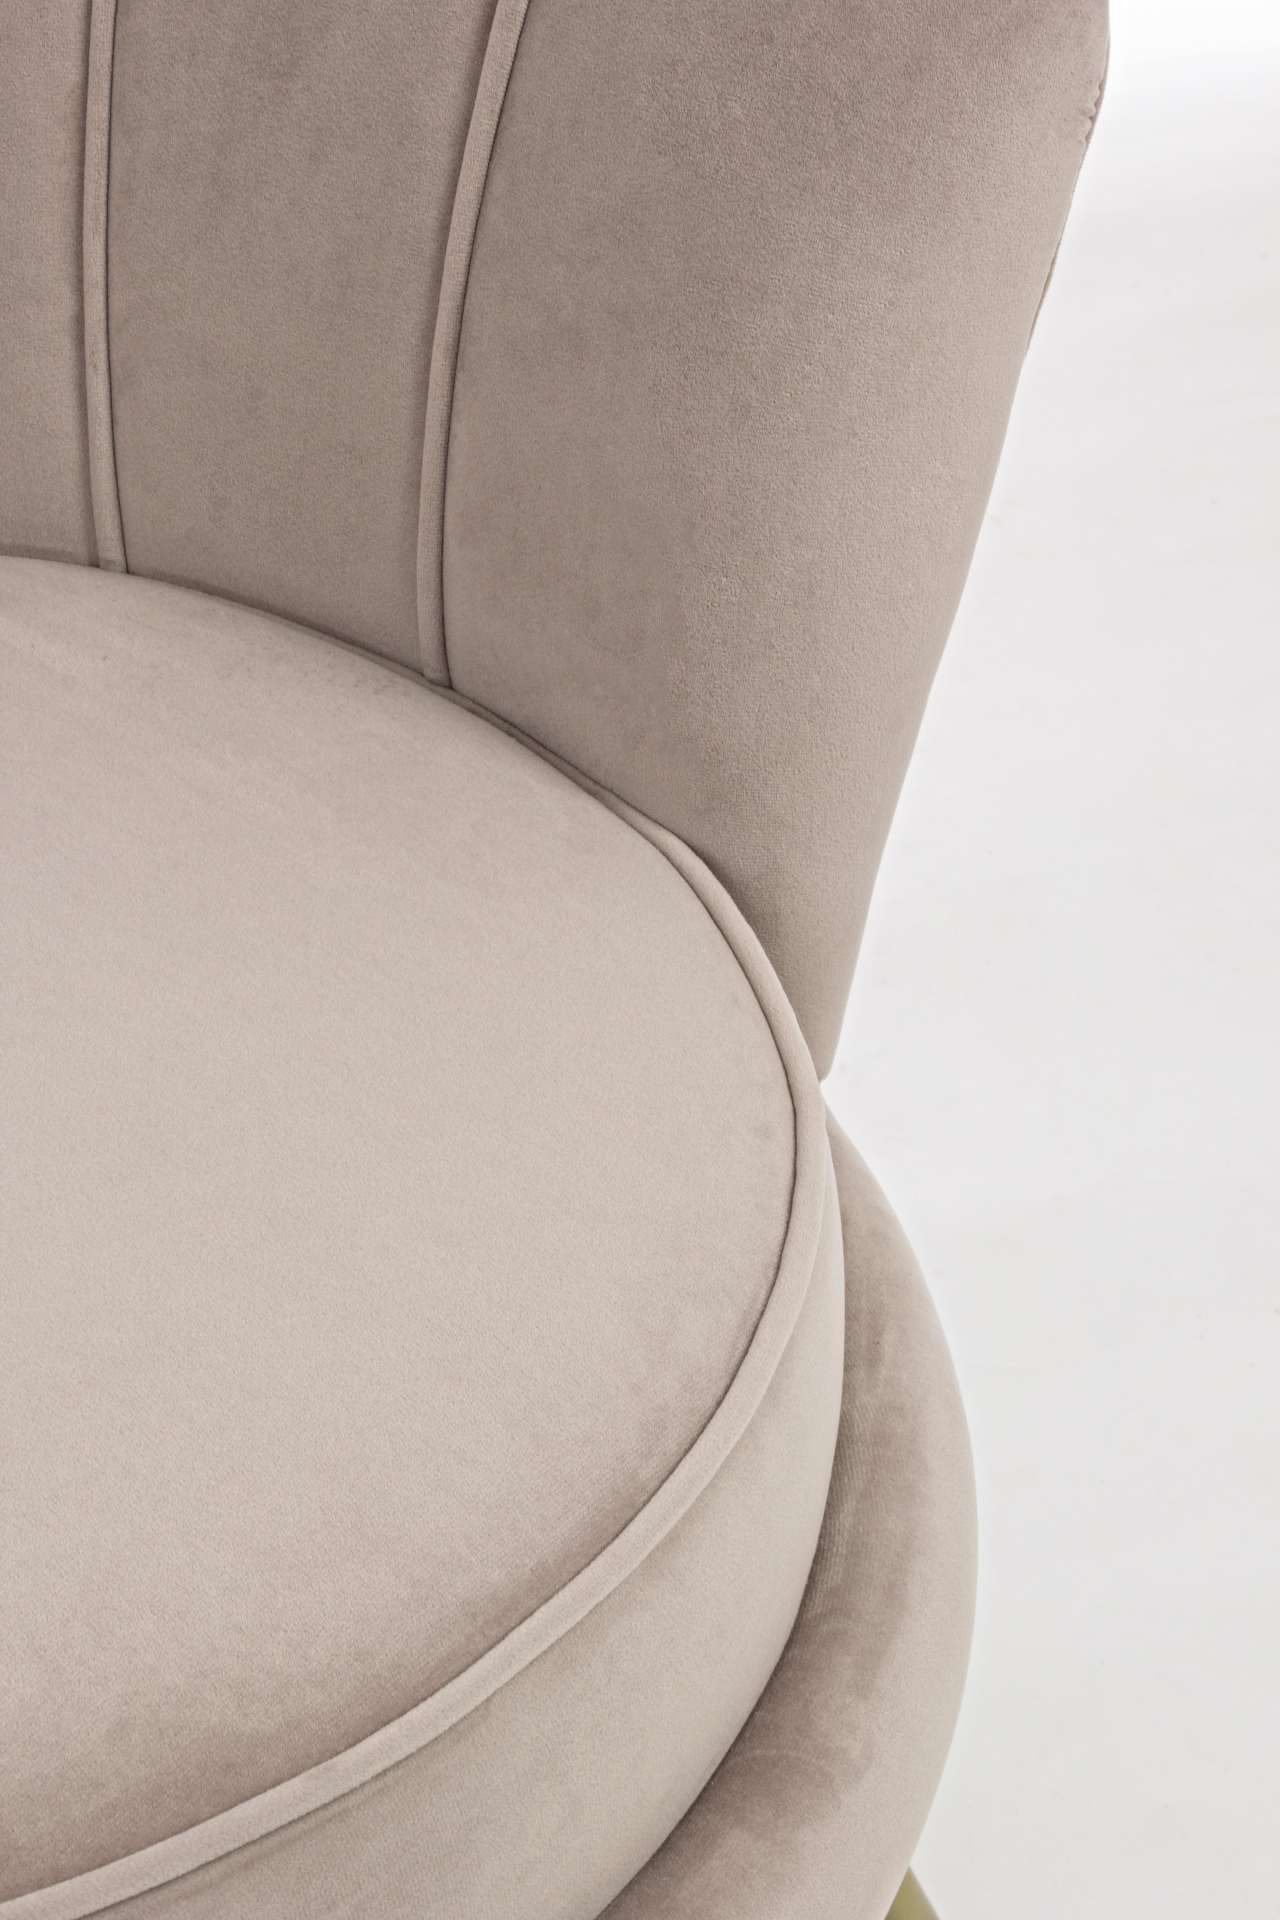 Der Sessel Giliola überzeugt mit seinem modernen Design. Gefertigt wurde er aus Stoff in Samt-Optik, welcher einen hellgrauen Farbton besitzt. Das Gestell ist aus Metall und hat eine goldene Farbe. Der Sessel besitzt eine Sitzhöhe von 45 cm. Die Breite be